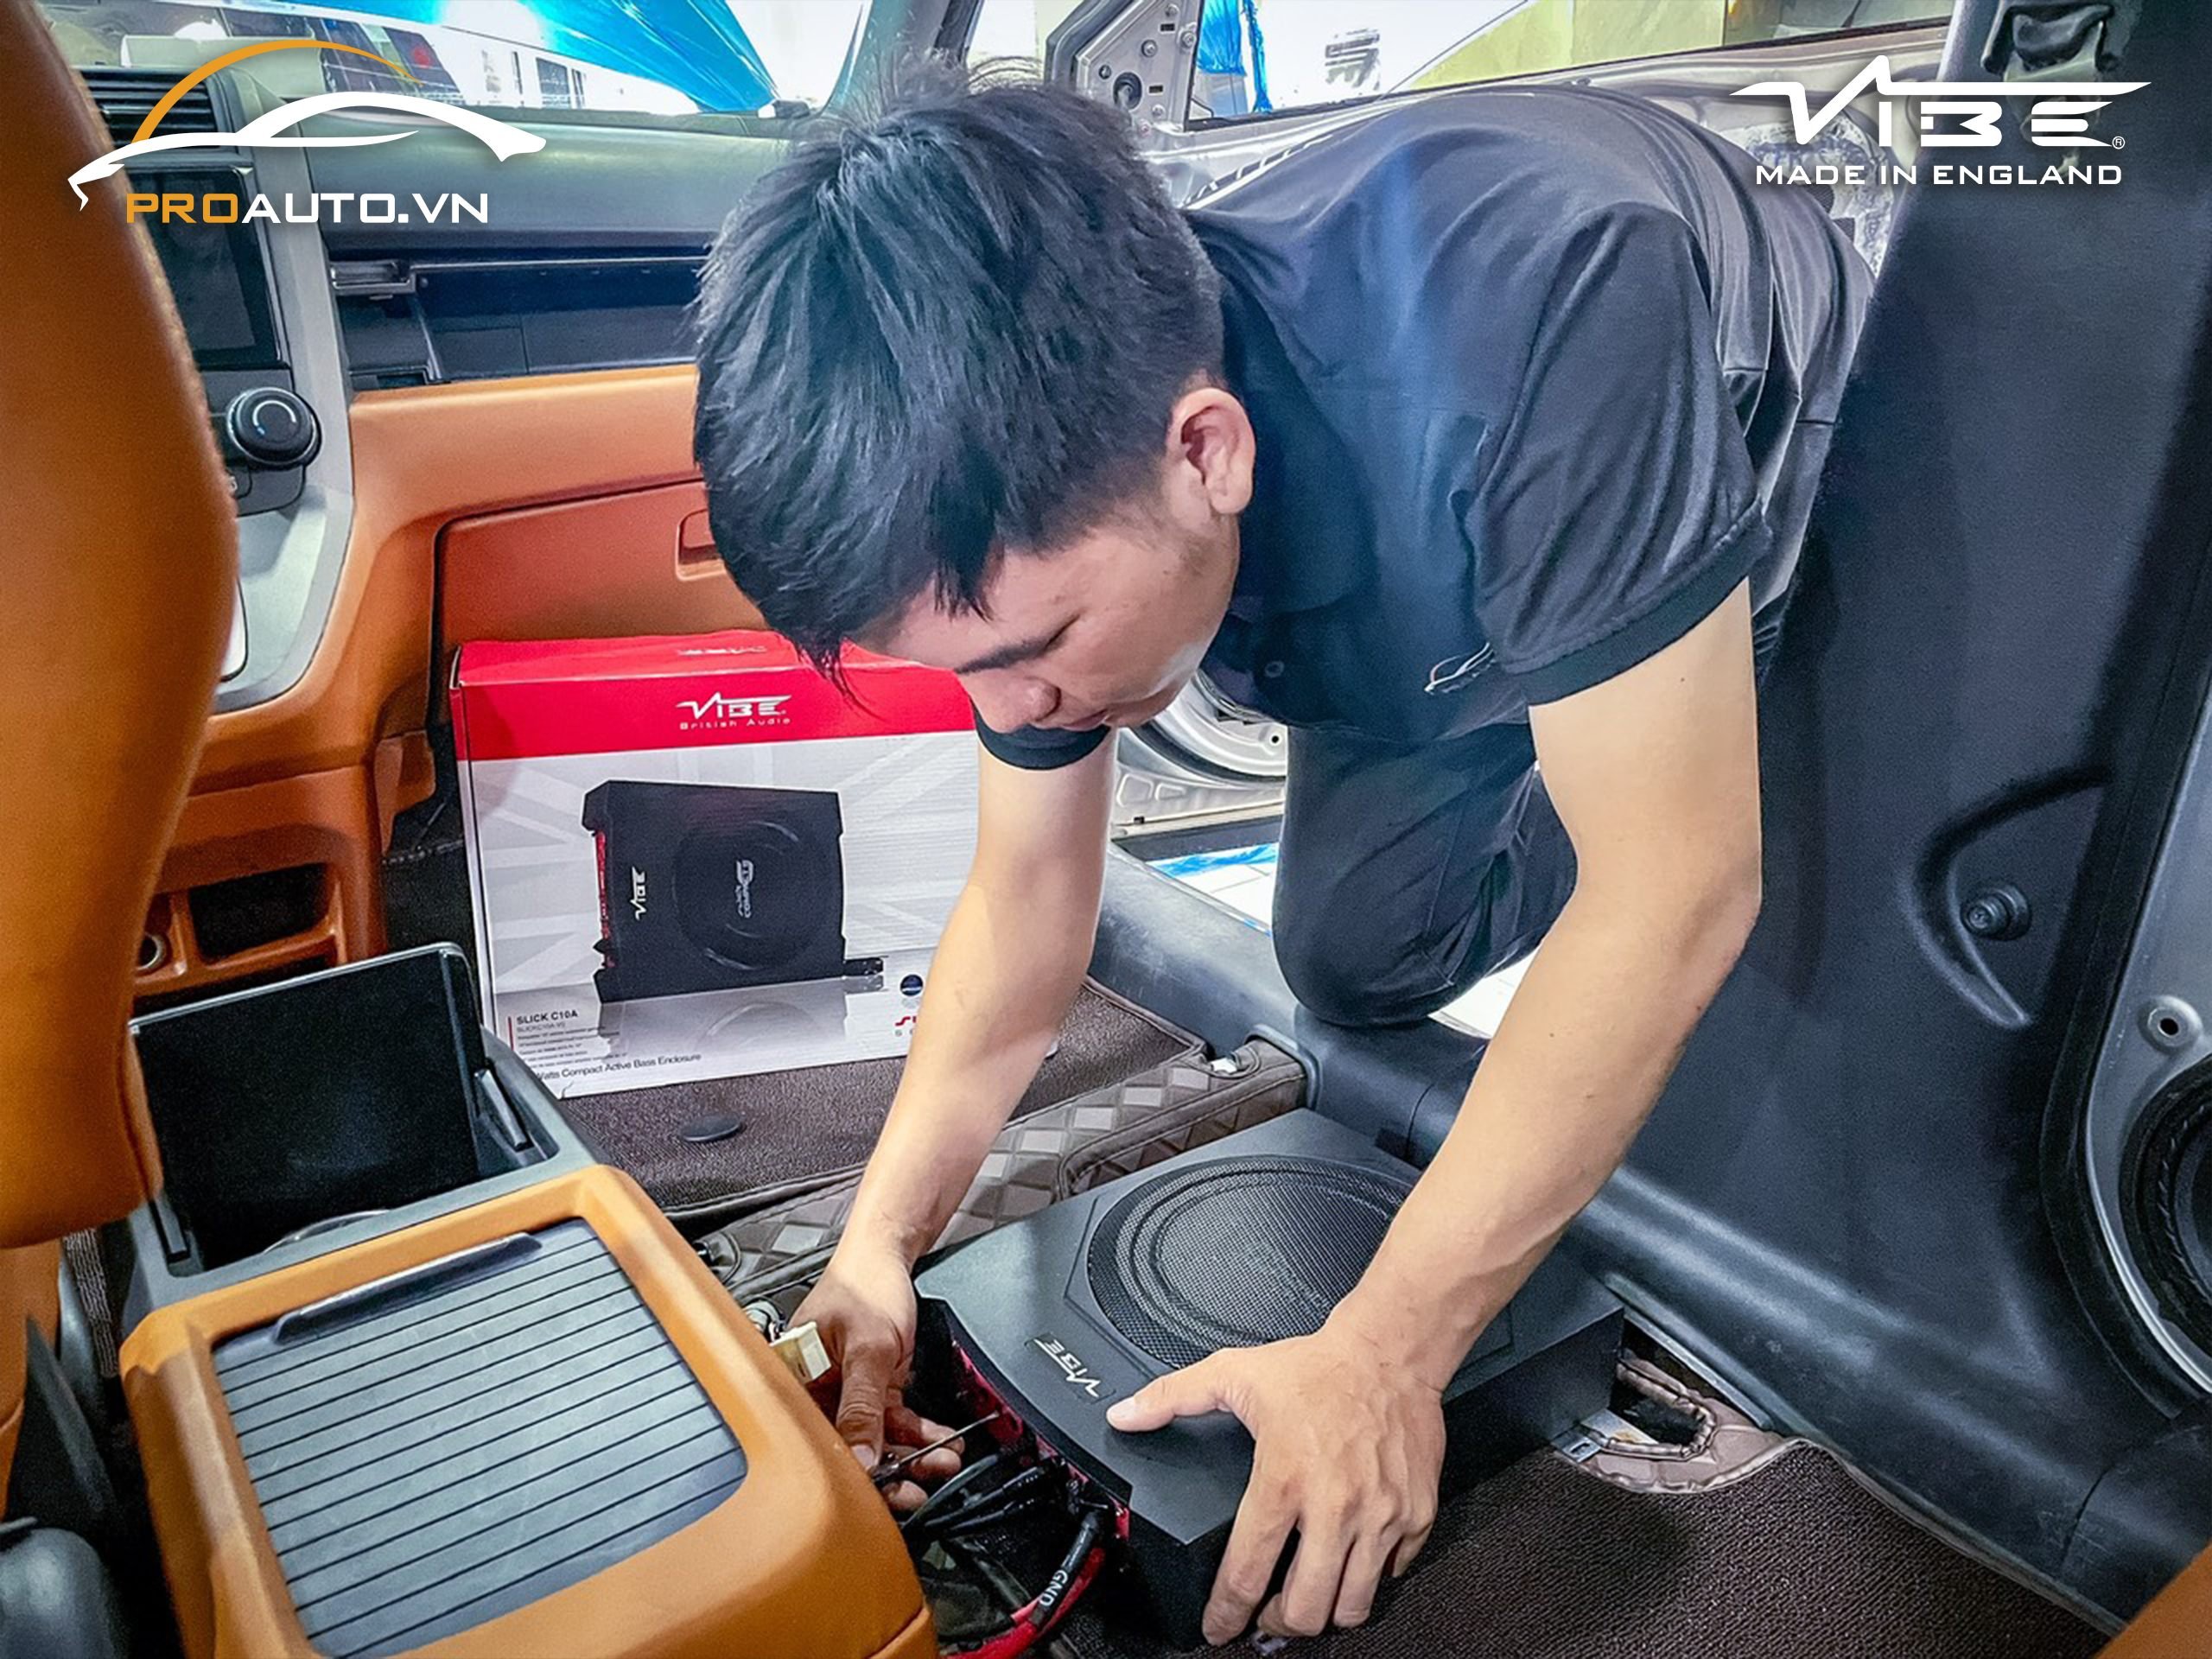 Hình nâng cấp âm thanh Vibe (Loa sub điện gầm ghế) cho xe Honda CR-V